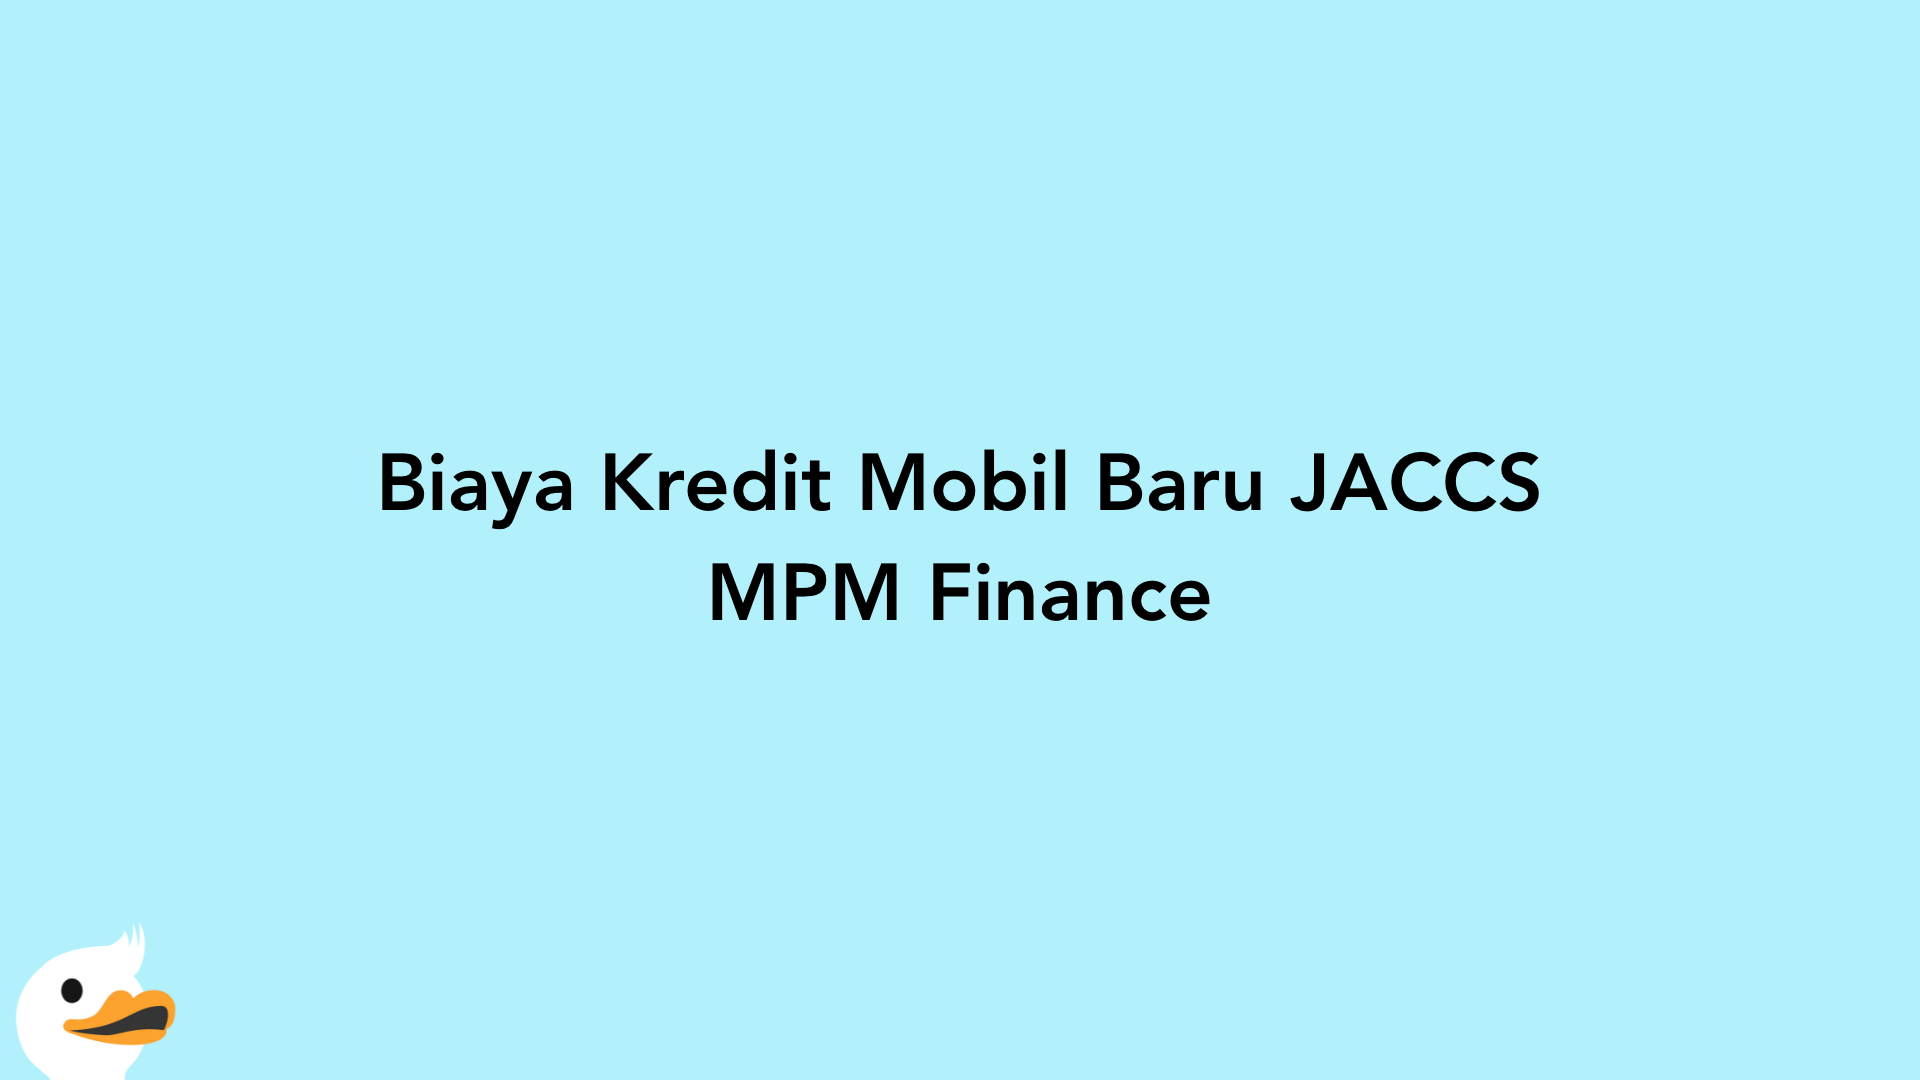 Biaya Kredit Mobil Baru JACCS MPM Finance